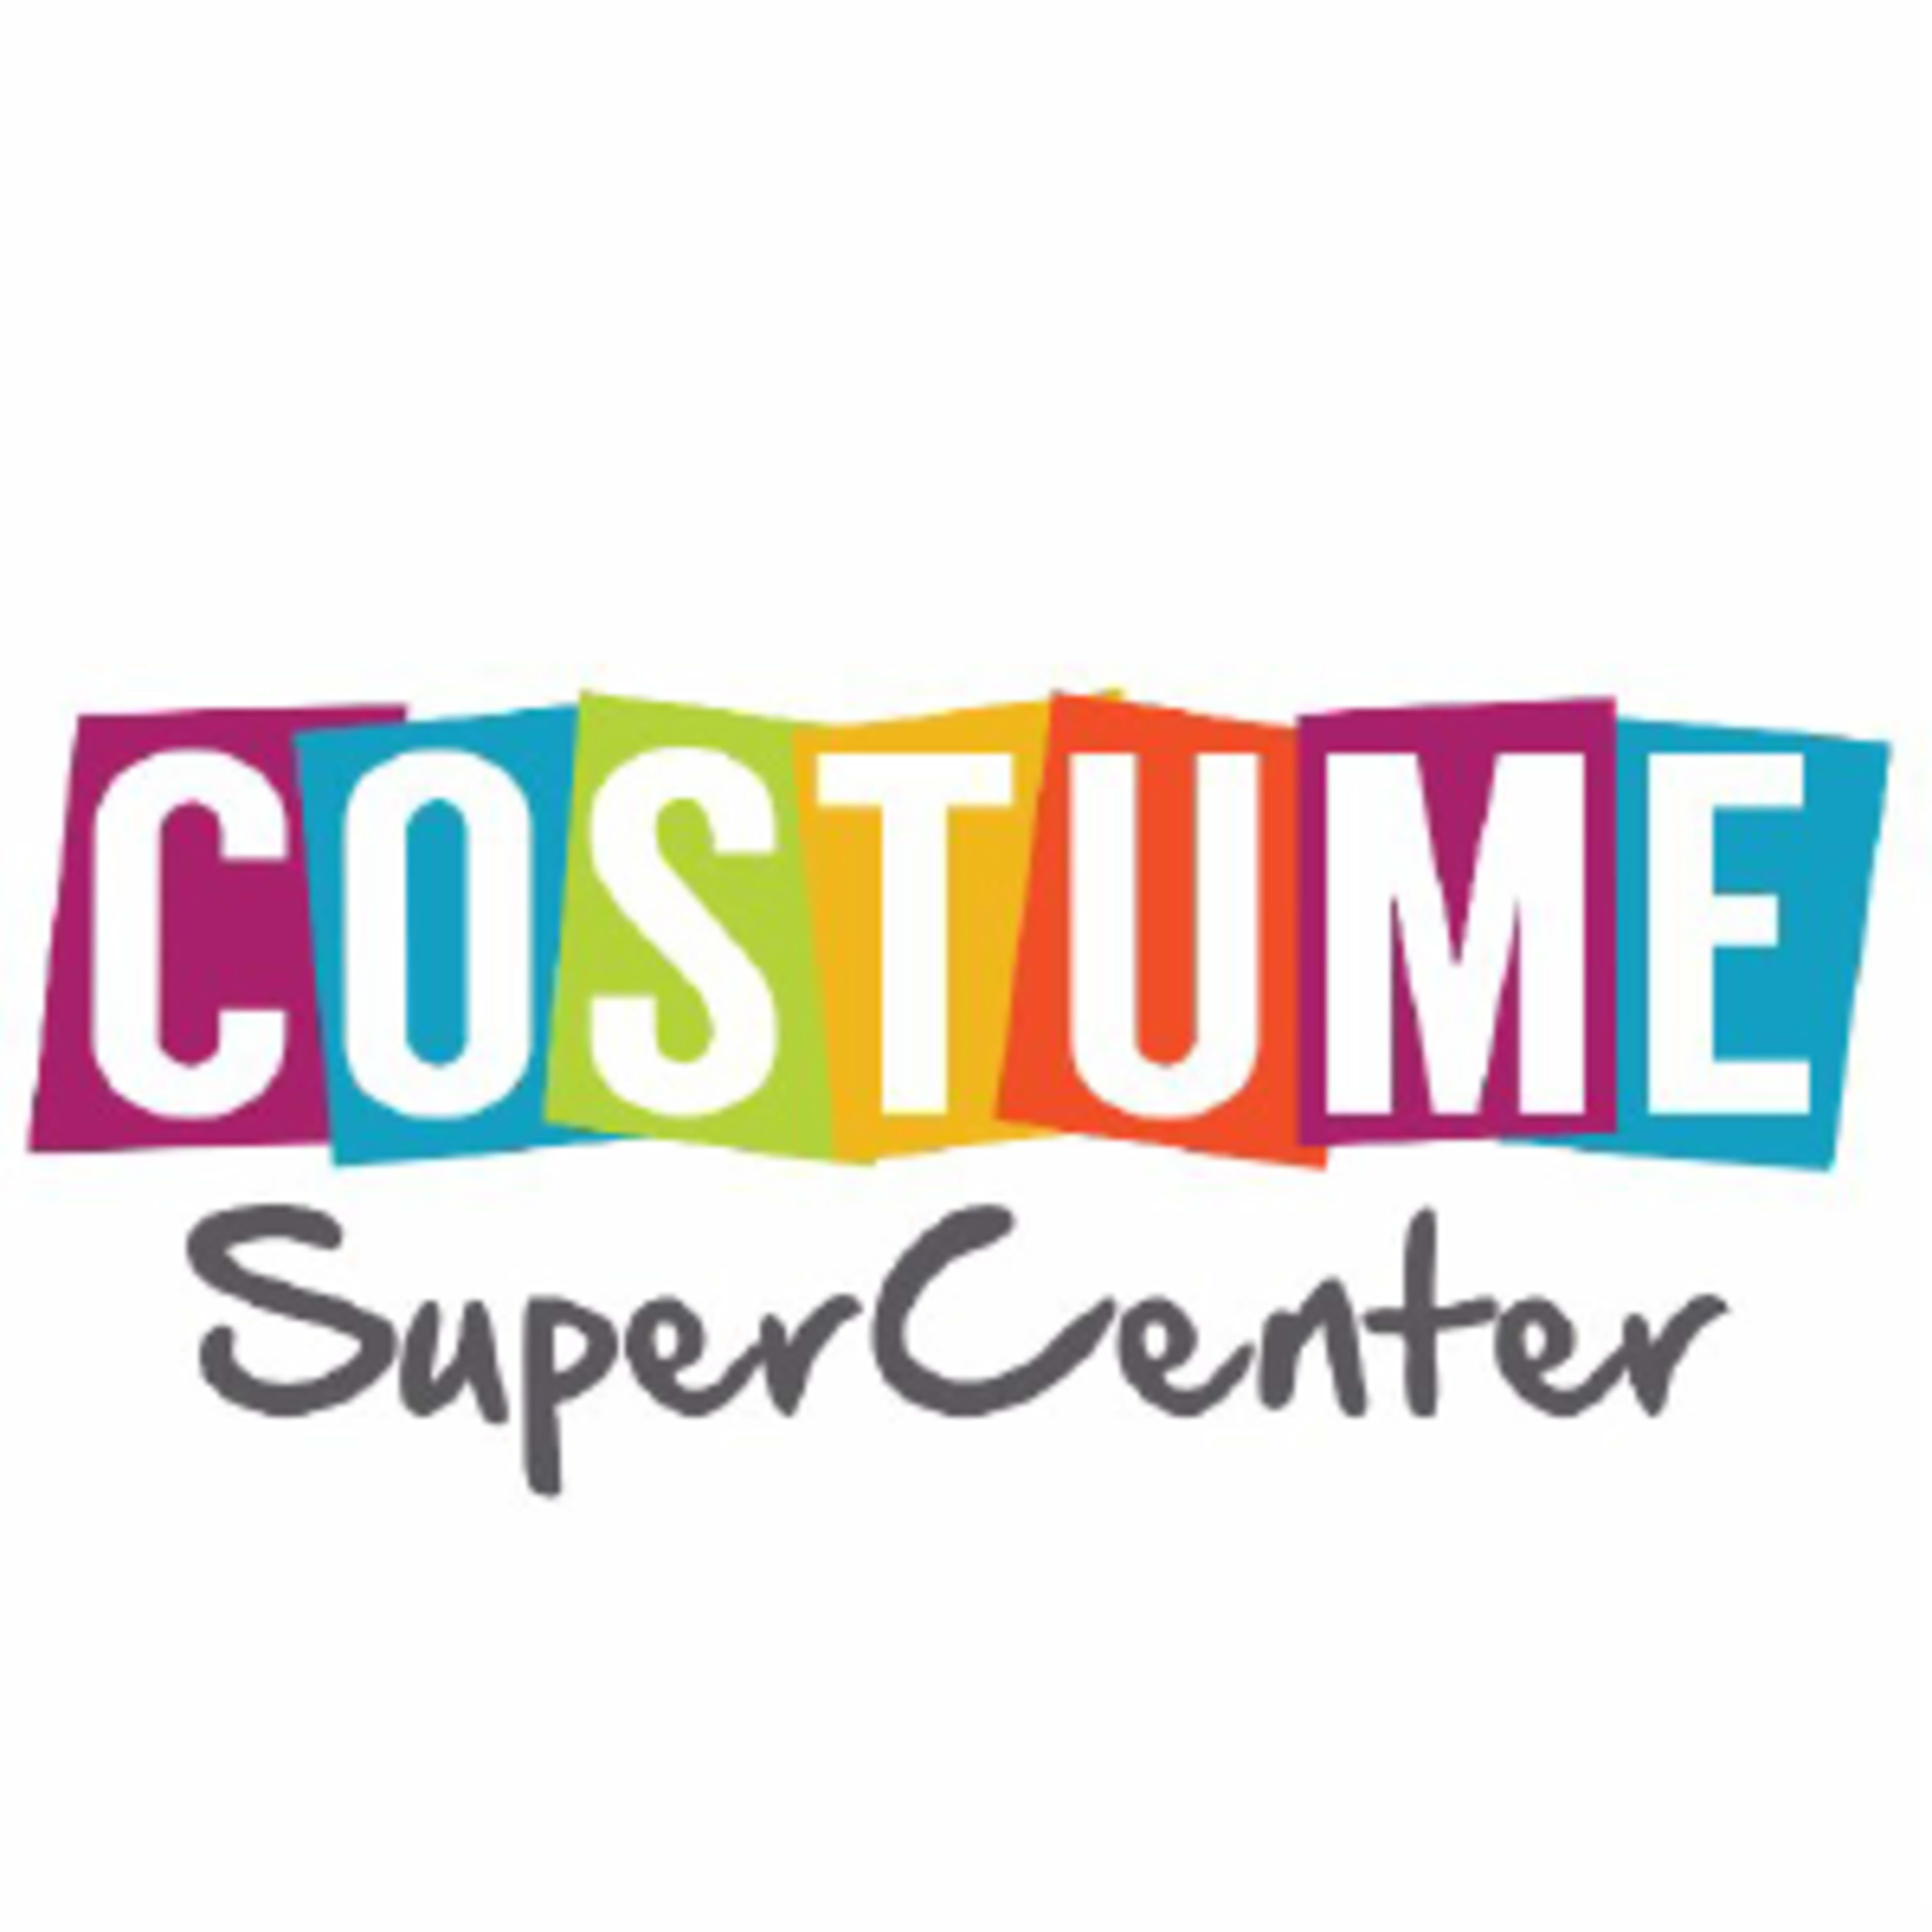 Costume SuperCenterCode